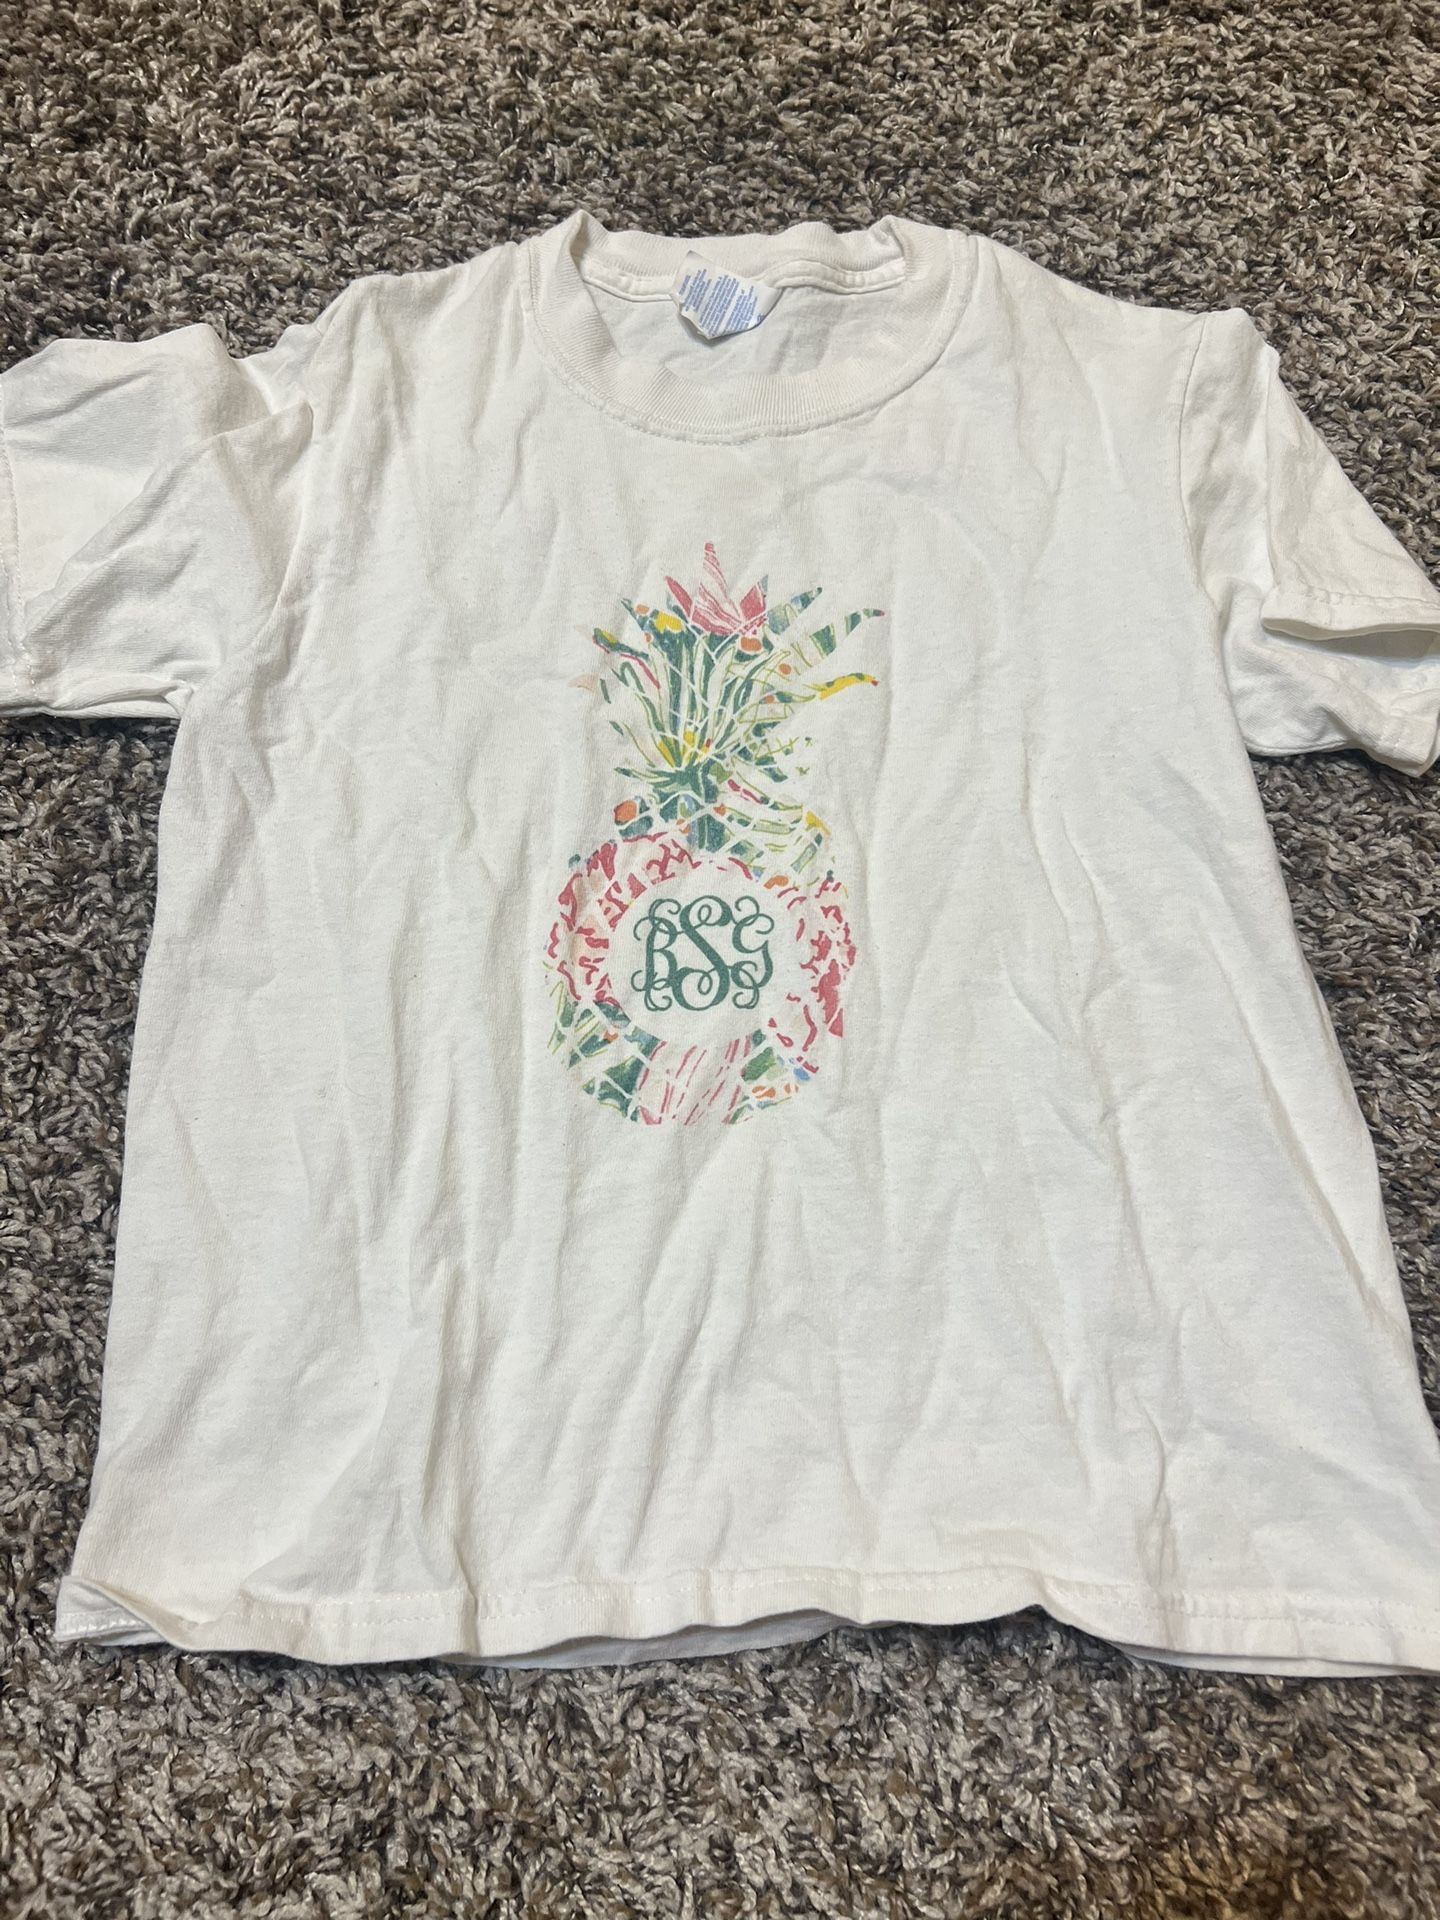 Girl’s bsg monogram pineapple t-shirt. Size small